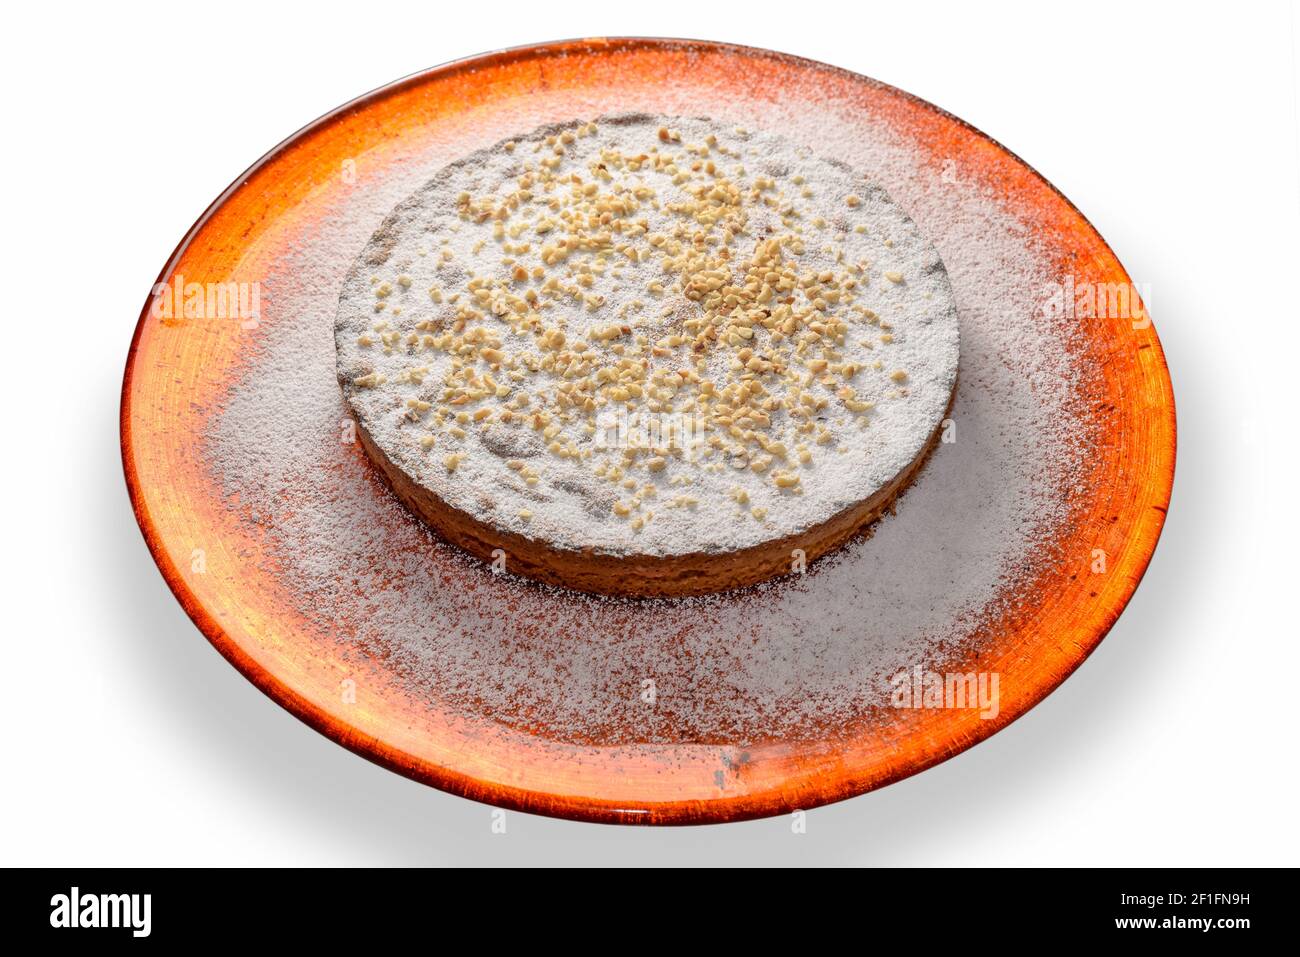 torta di nocciole con zucchero a velo e nocciole tritate in arancio piastra isolata sul bianco Foto Stock